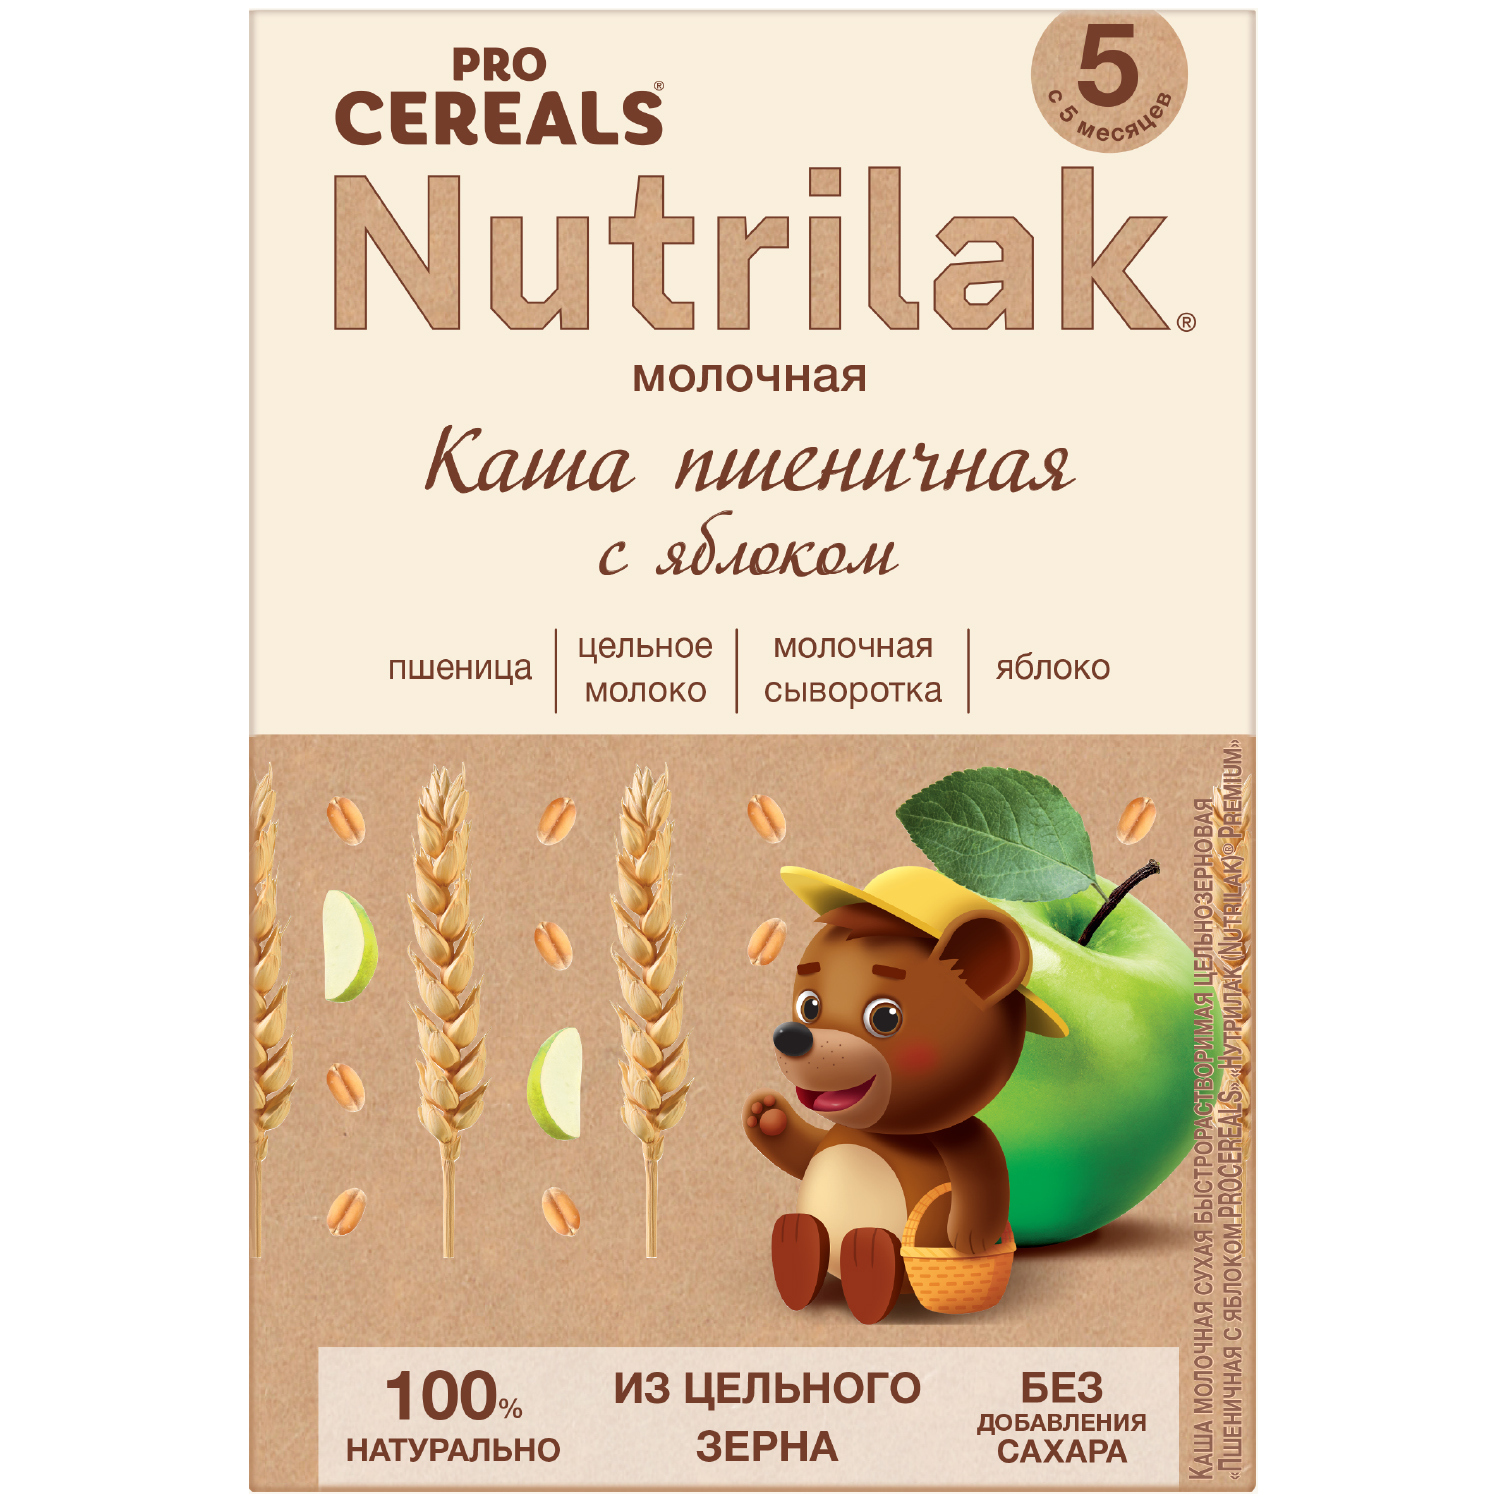 Каша молочная Nutrilak пшеничная яблоко Premium Procereals с 5 месяцев, 200 г